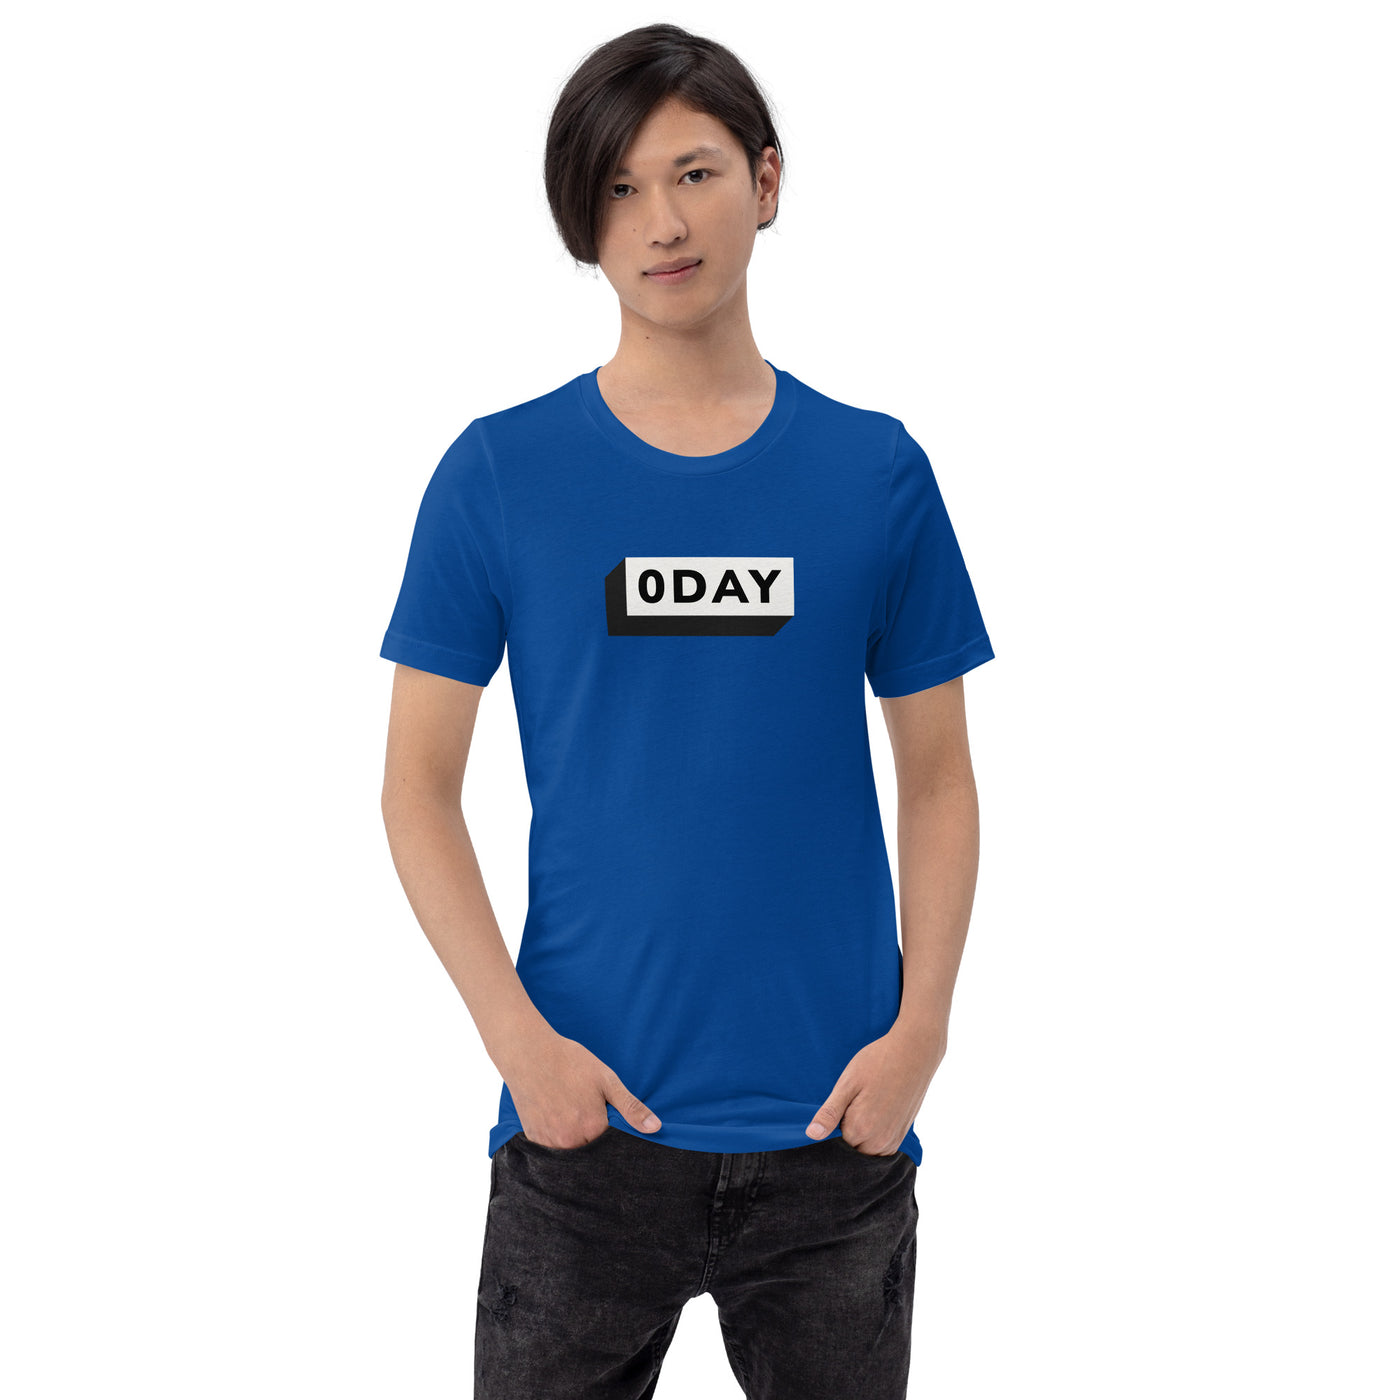 0 day v1 - Unisex t-shirt